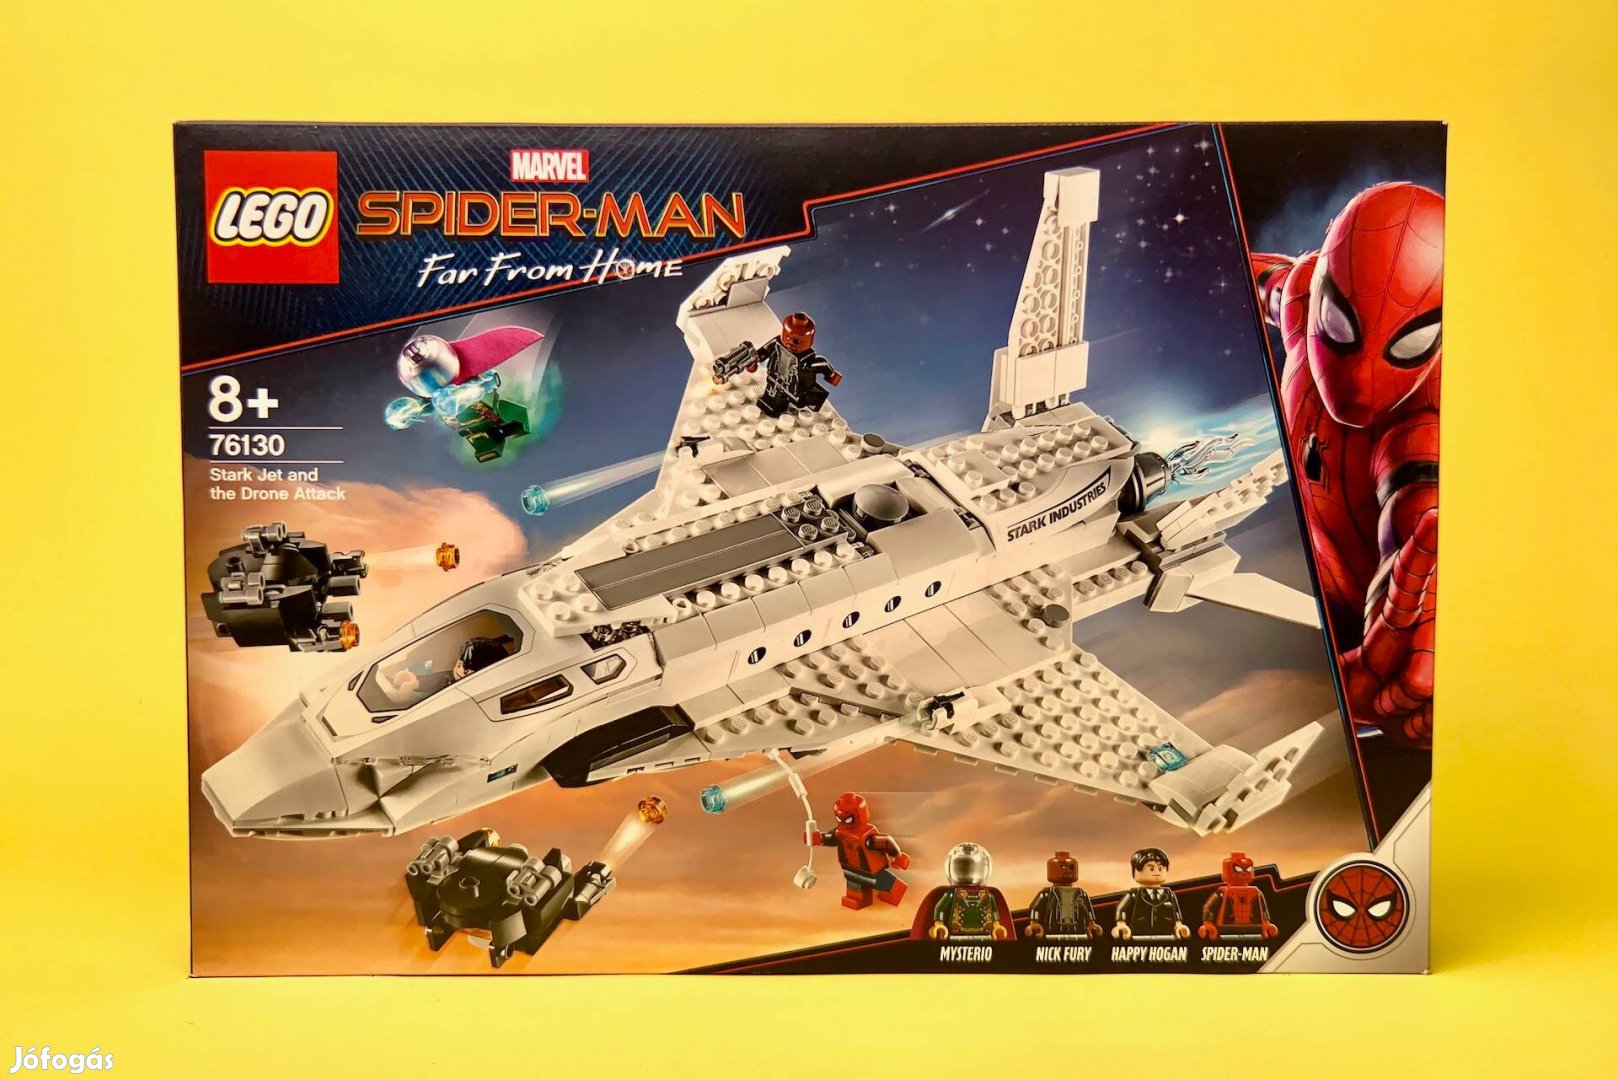 LEGO Marvel 76130 Stark Jet and the Drone Attack, Uj, Bontatlan